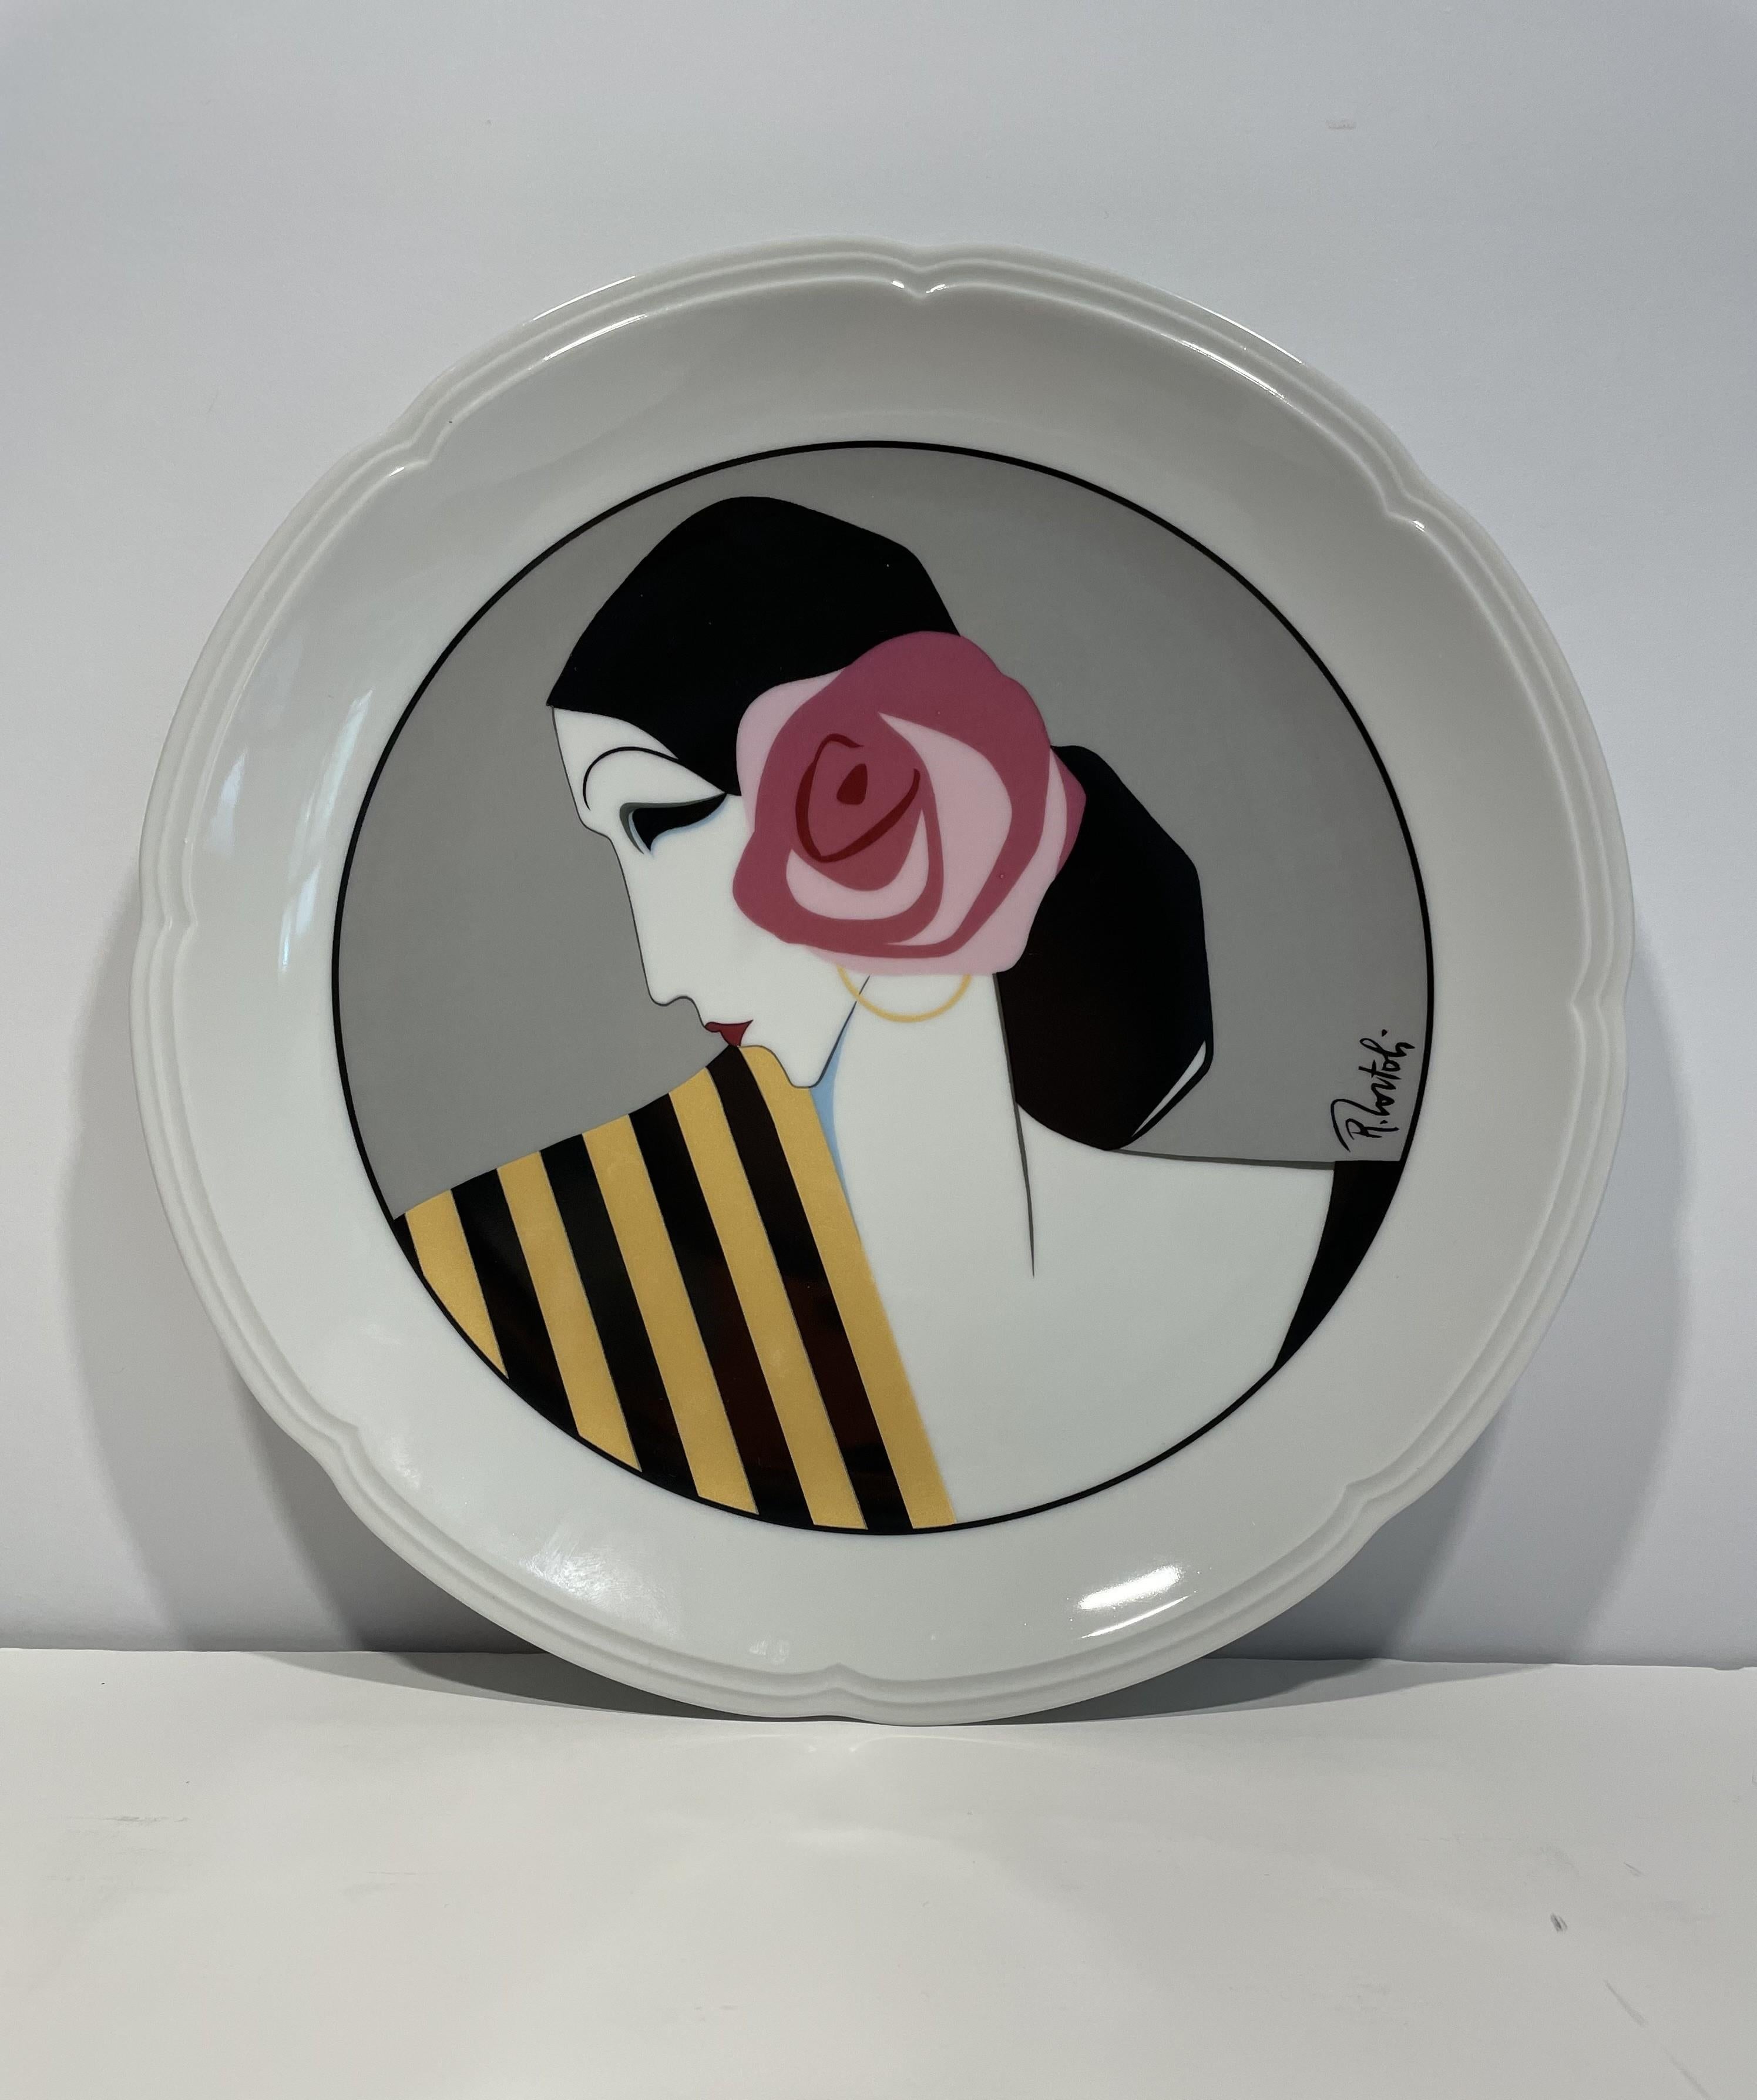 20th Century White French Porcelain Art Deco Dinner or Desert Plates - Set of 4 For Sale